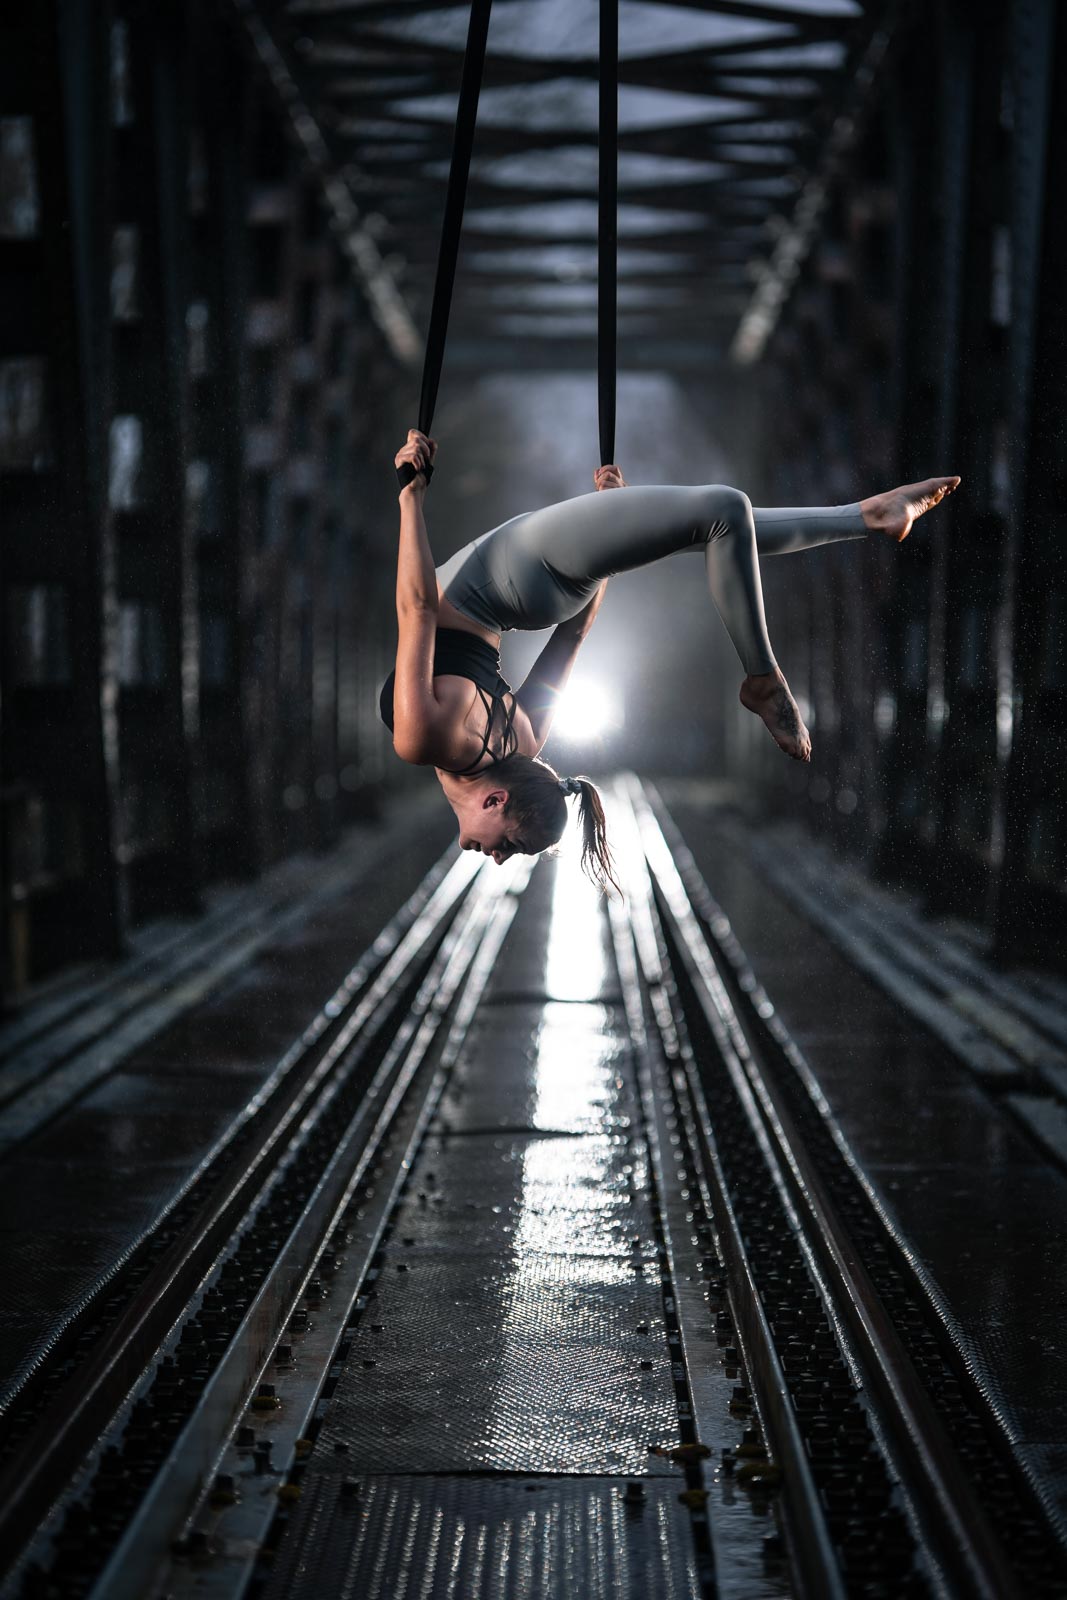 Luftakrobatik Artistin hängt an einer Brücke über verlassenen Bahngleisen im Regen. Blitzlicht sorg für dramatische Beleuchtung.